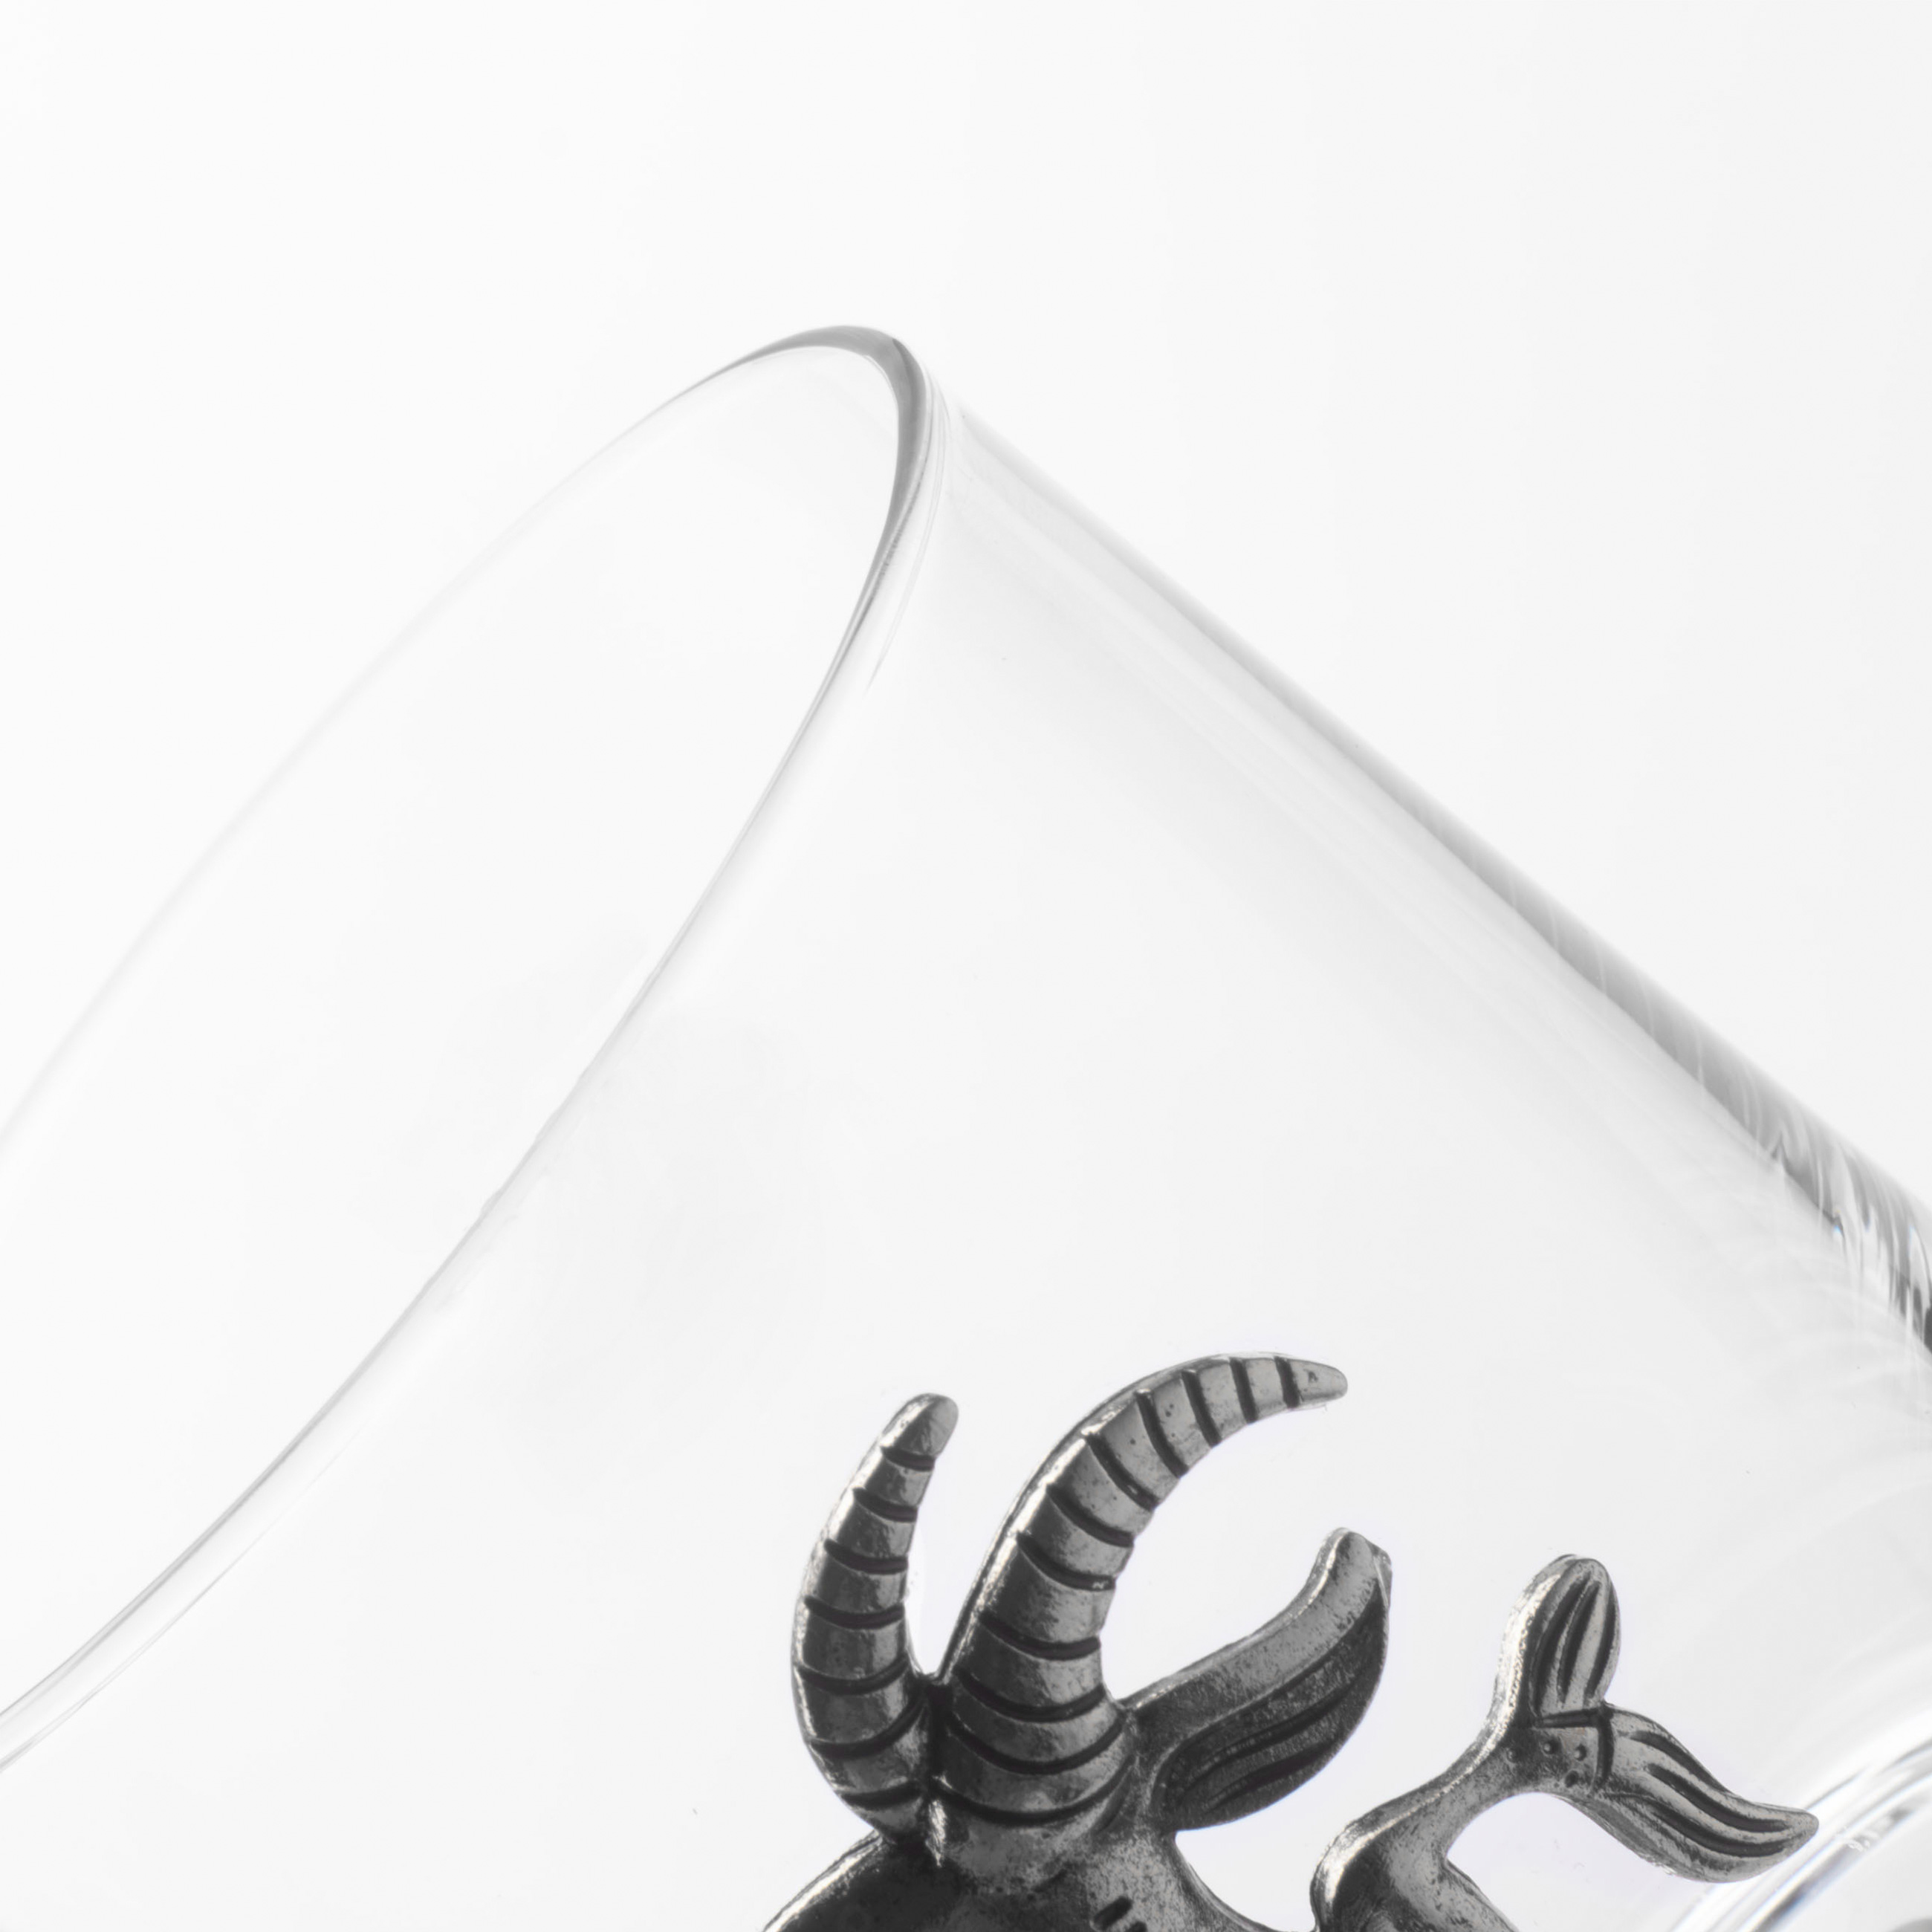 Стакан для виски, 10 см, 340 мл, стекло/металл, серебристый, Козерог, Zodiac изображение № 4